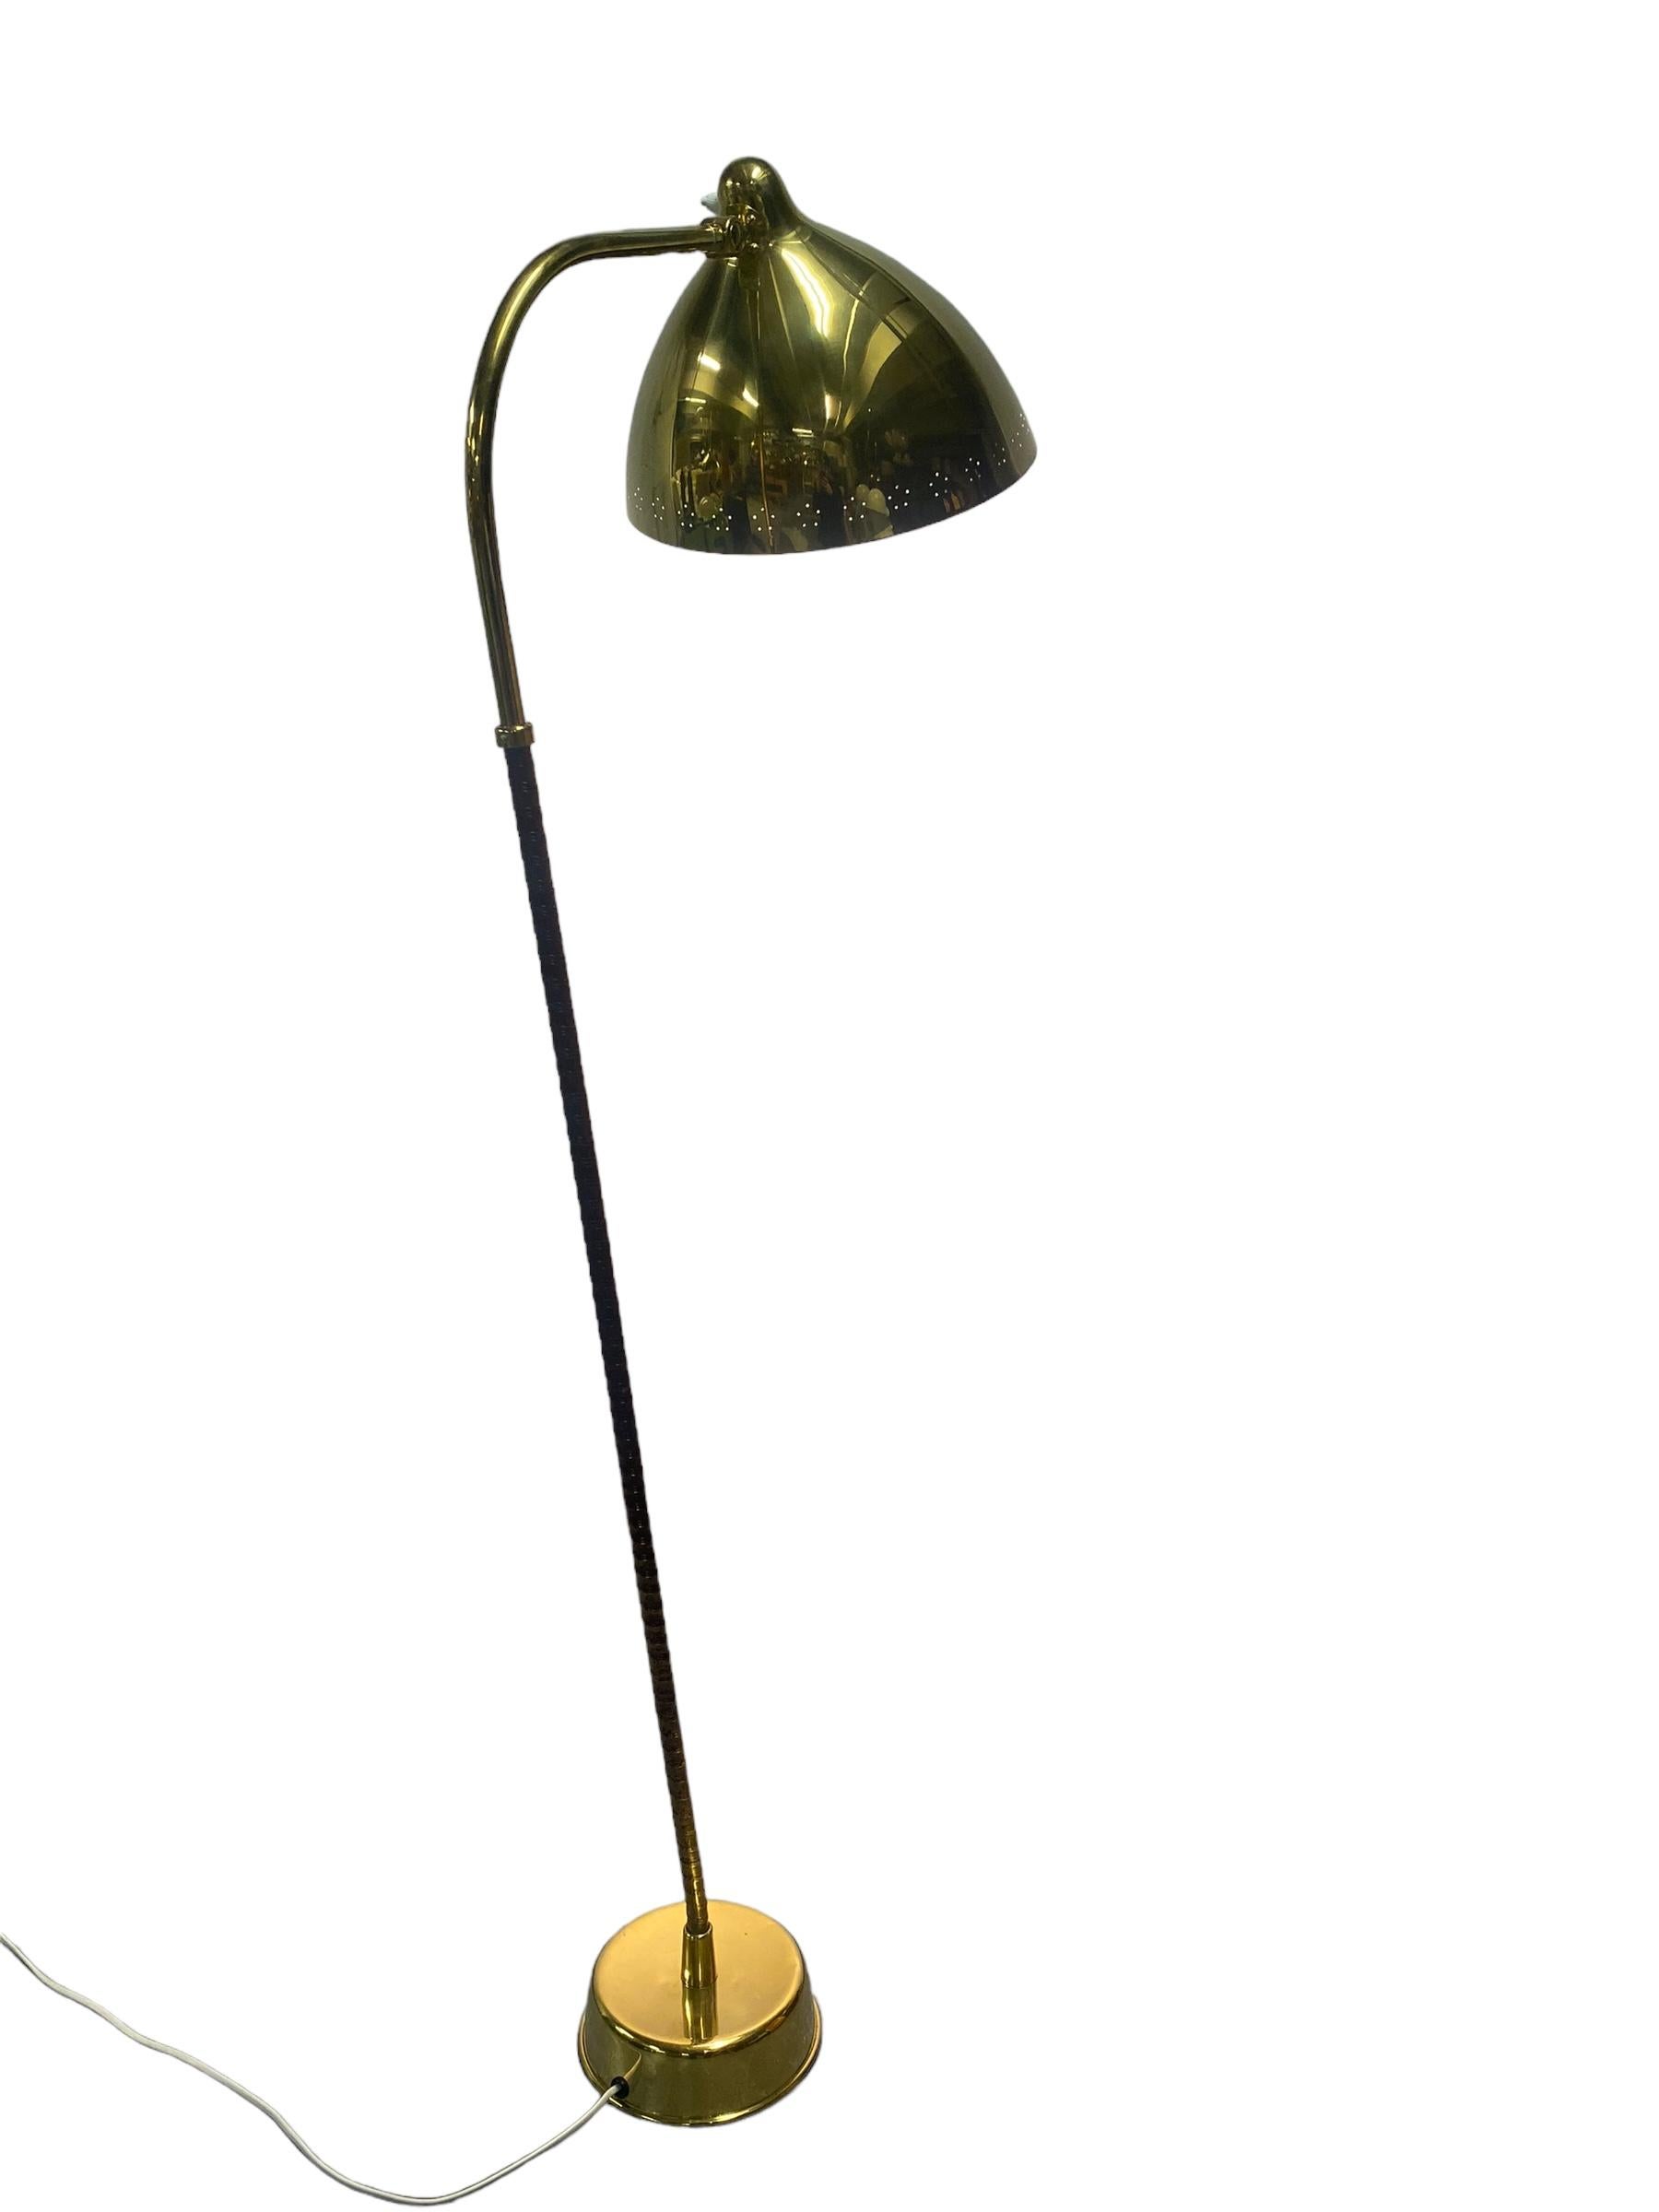 Magnifique et original lampadaire des années 1950, avec un abat-jour en laiton. Conçu par Lisa-Johansson pape et fabriqué par Orno. En parfait état d'origine avec une belle patine sur la tige et les parties en laiton. La lampe est ornée d'un cachet